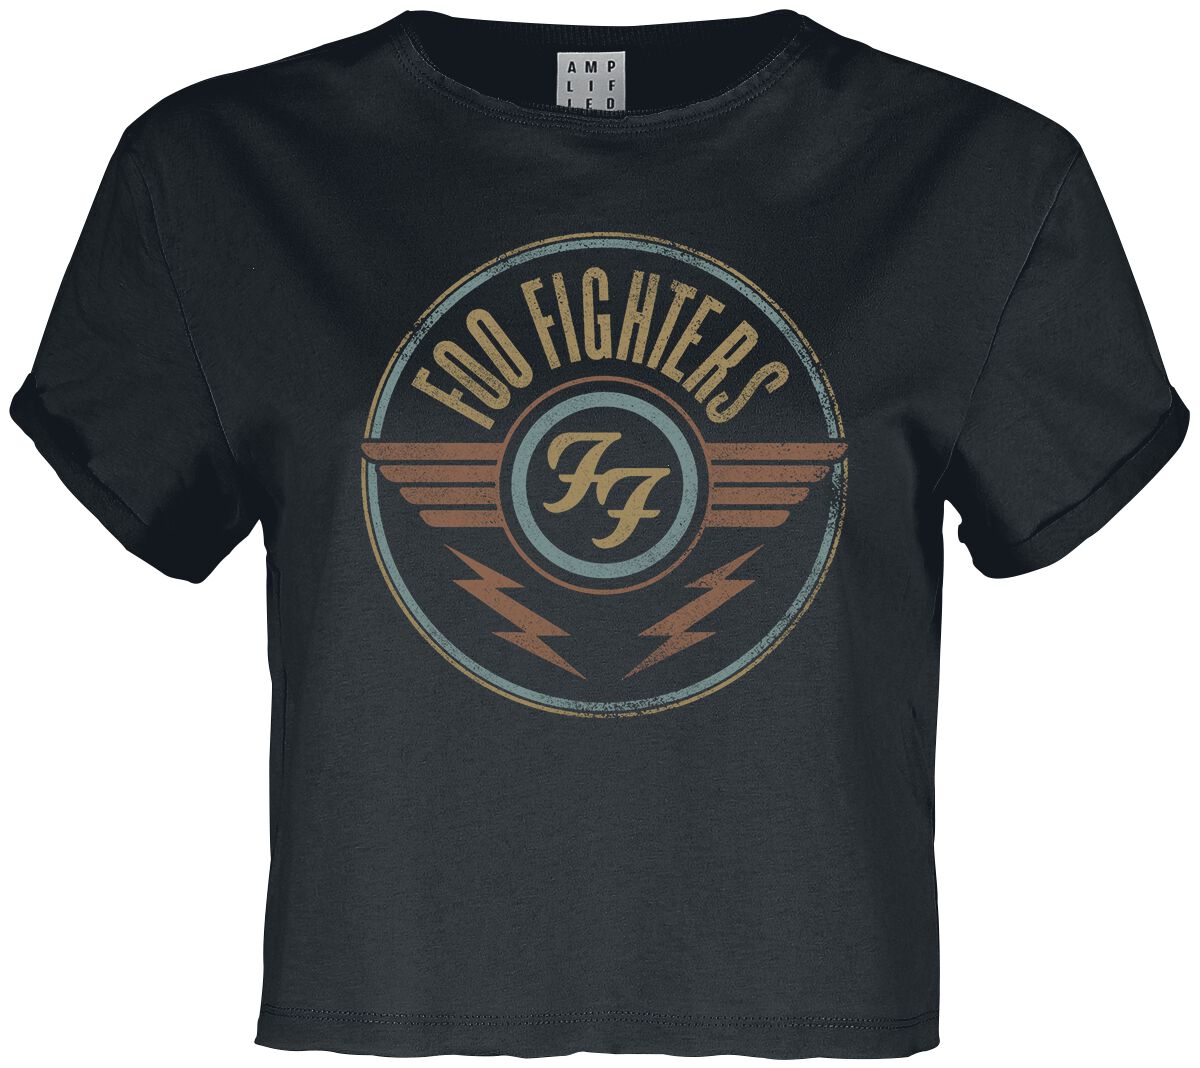 T-Shirt Manches courtes de Foo Fighters - Amplified Collection - Air - XS à XXL - pour Femme - anthr